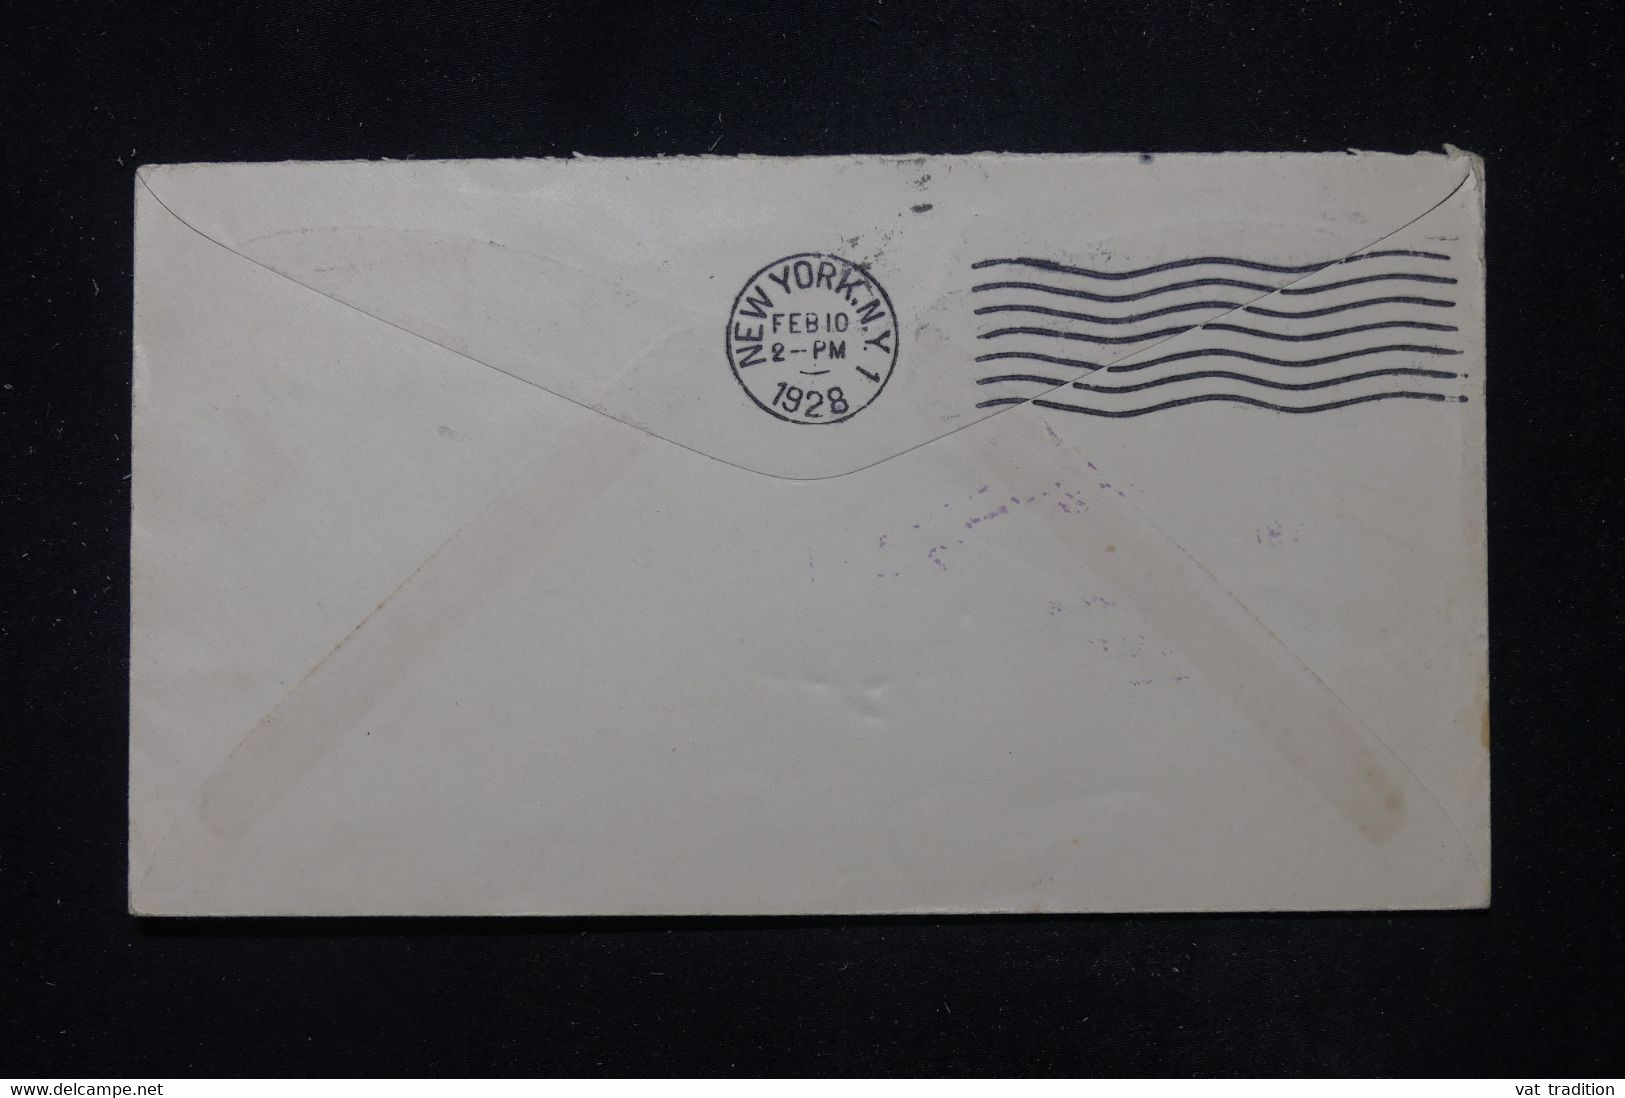 CUBA - Enveloppe De Habana Pour New York En 1928 Avec Cachet Commémoratif D'Aviation ( Lindbergh ) - L 111254 - Lettres & Documents